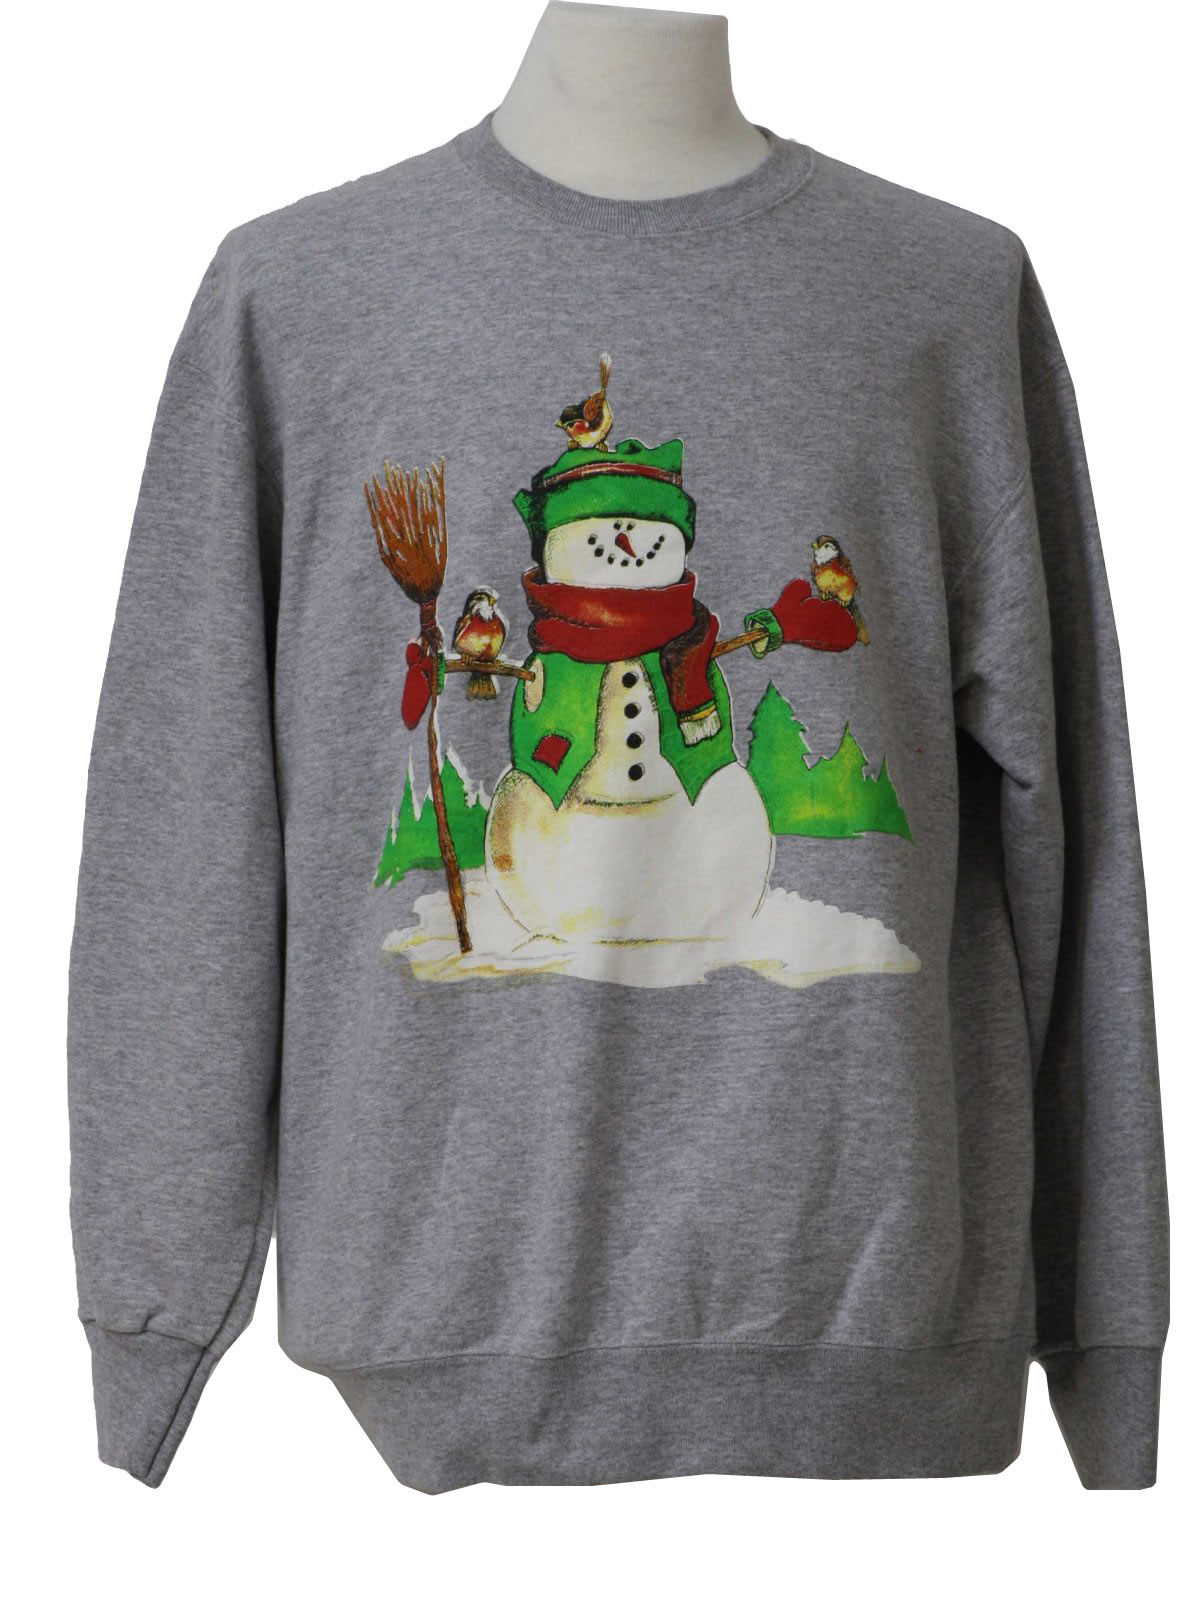 Ugly Christmas Sweatshirt: -Fruit of the Loom- Unisex grey, off white